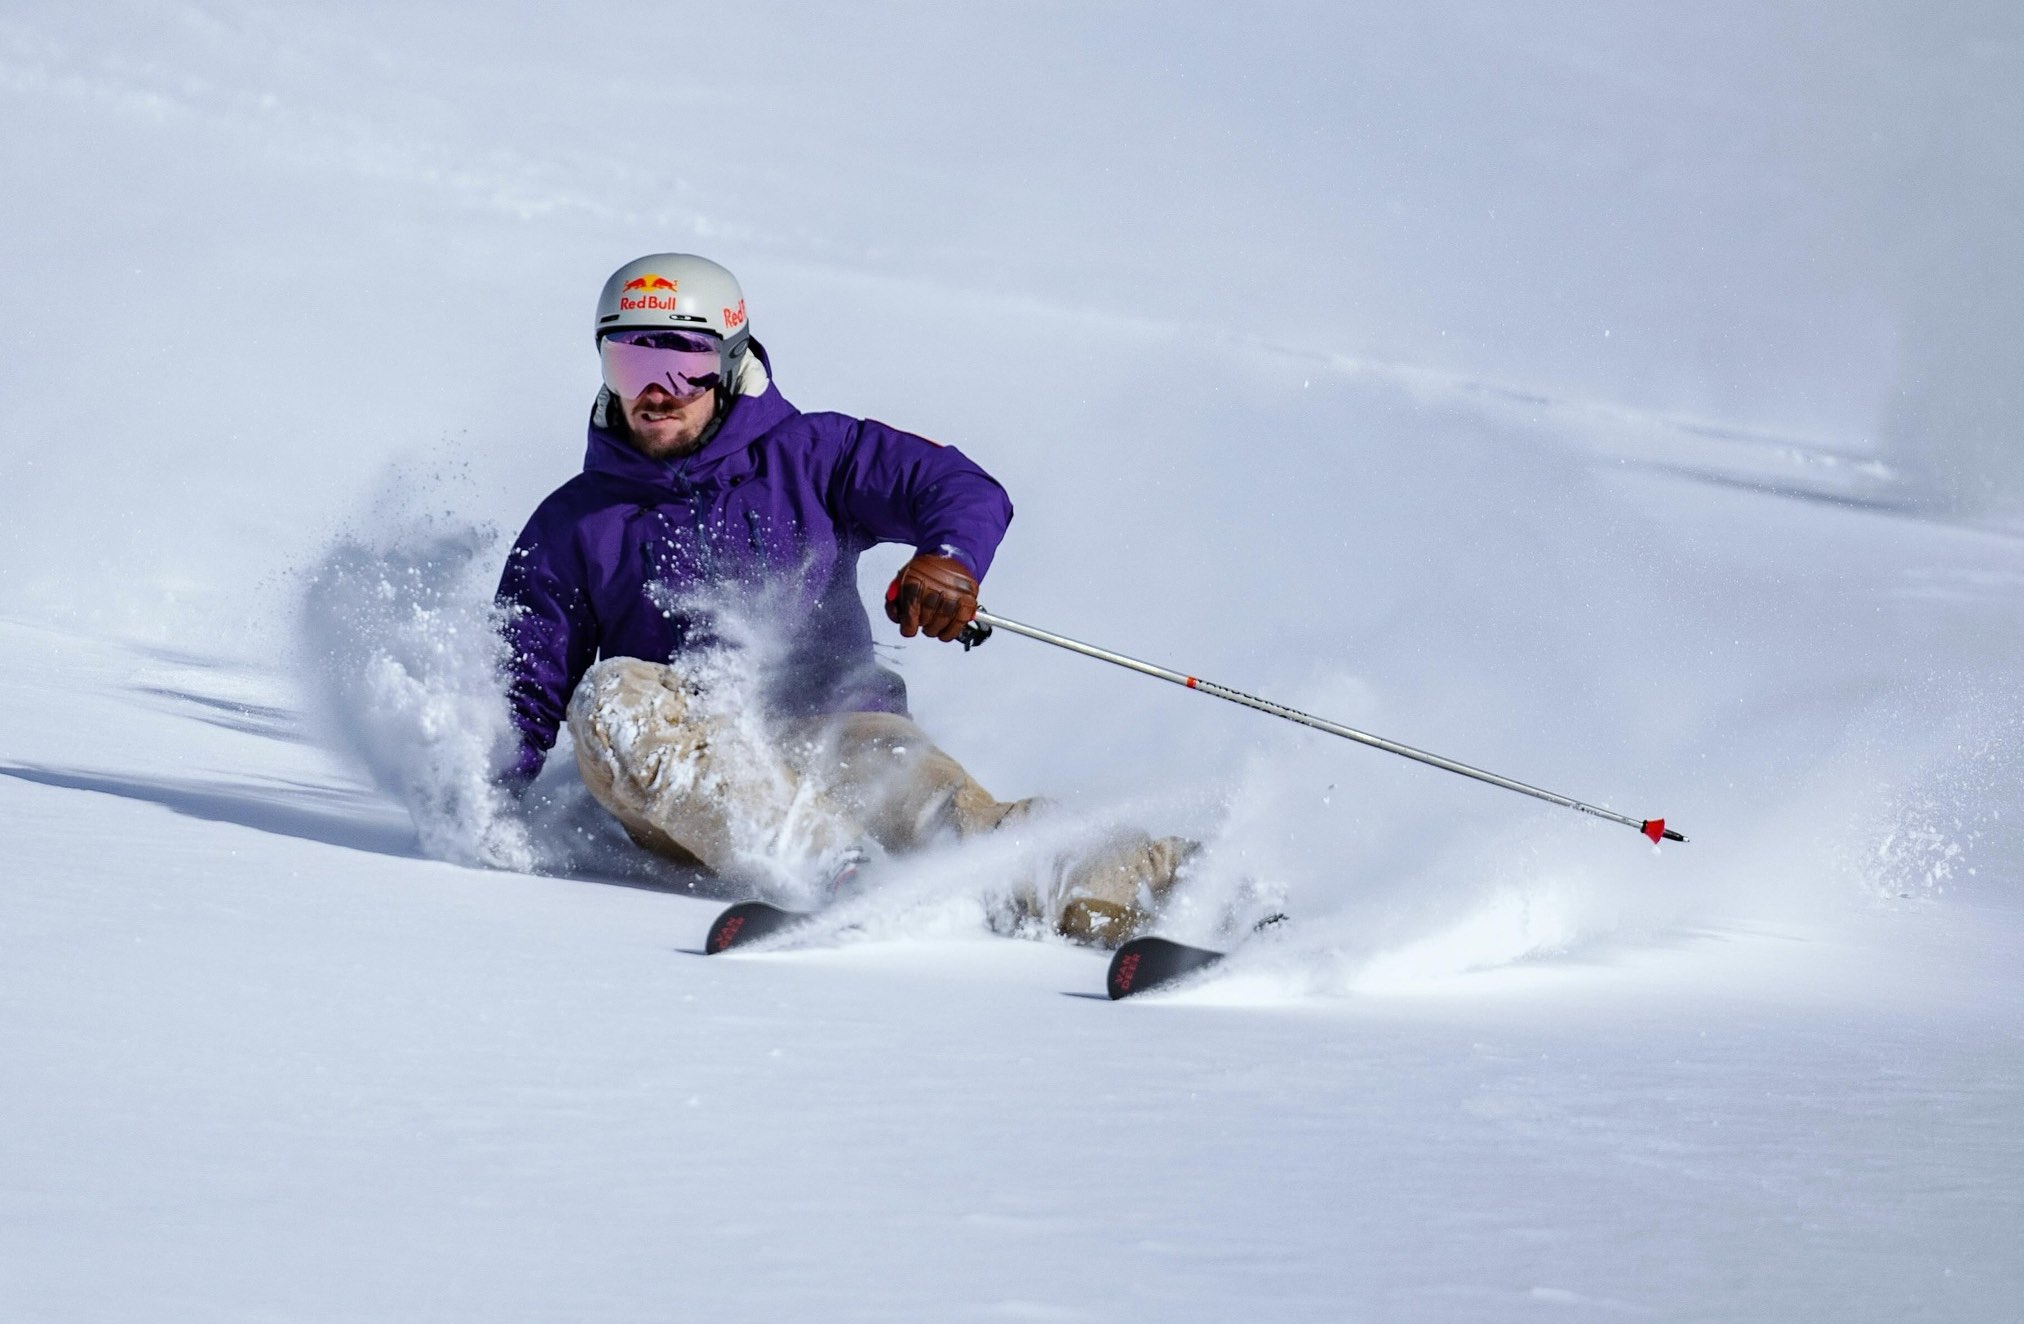 La leyenda austriaca del esquí Marcel Hirscher planea su regreso bajo bandera holandesa